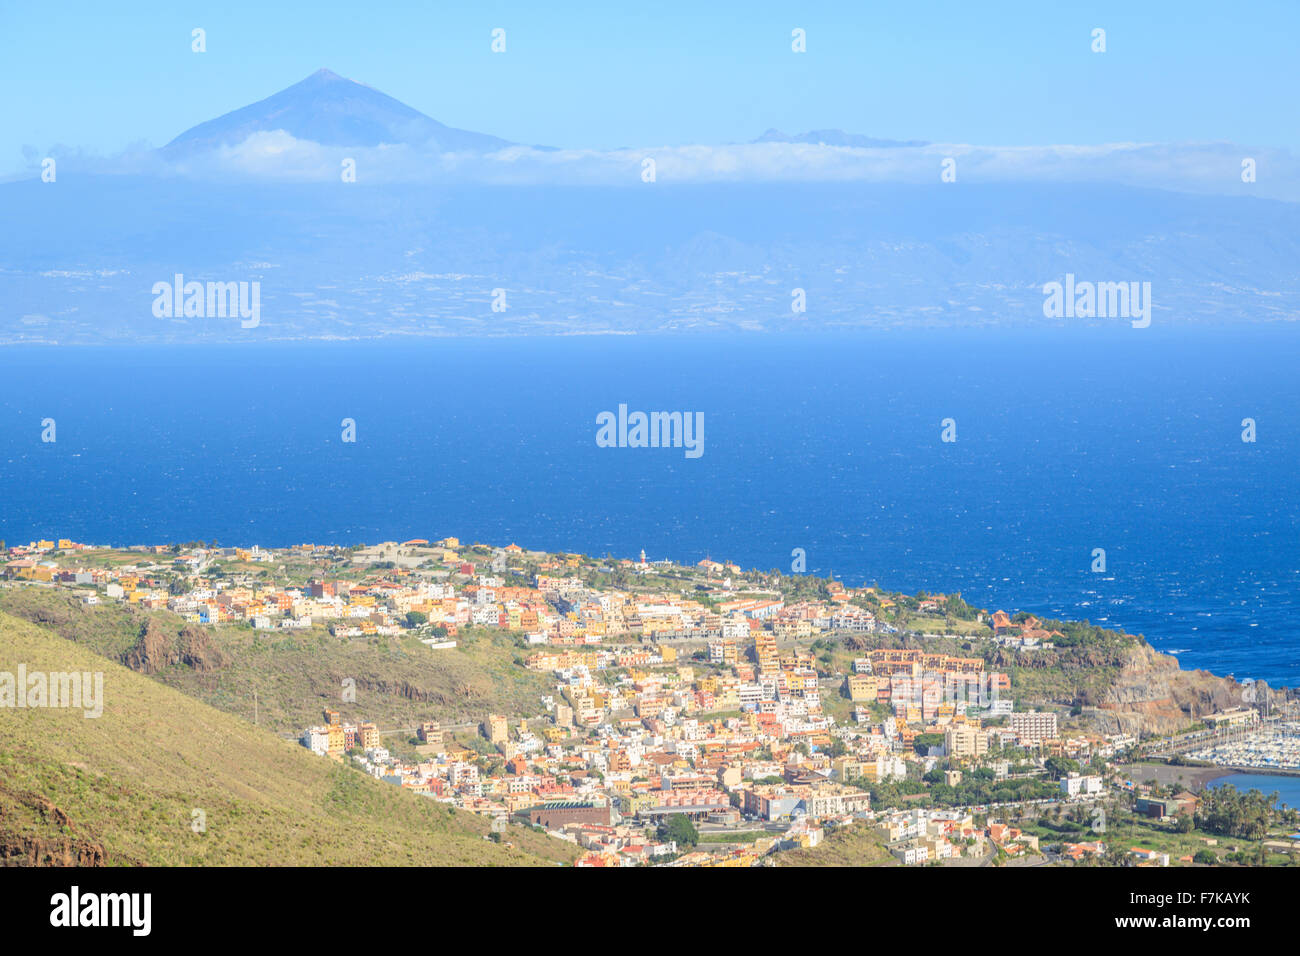 Una fotografia di San Sebastian de La Gomera nelle Isole Canarie, Spagna. Il monte Teide può essere visto in background. Foto Stock